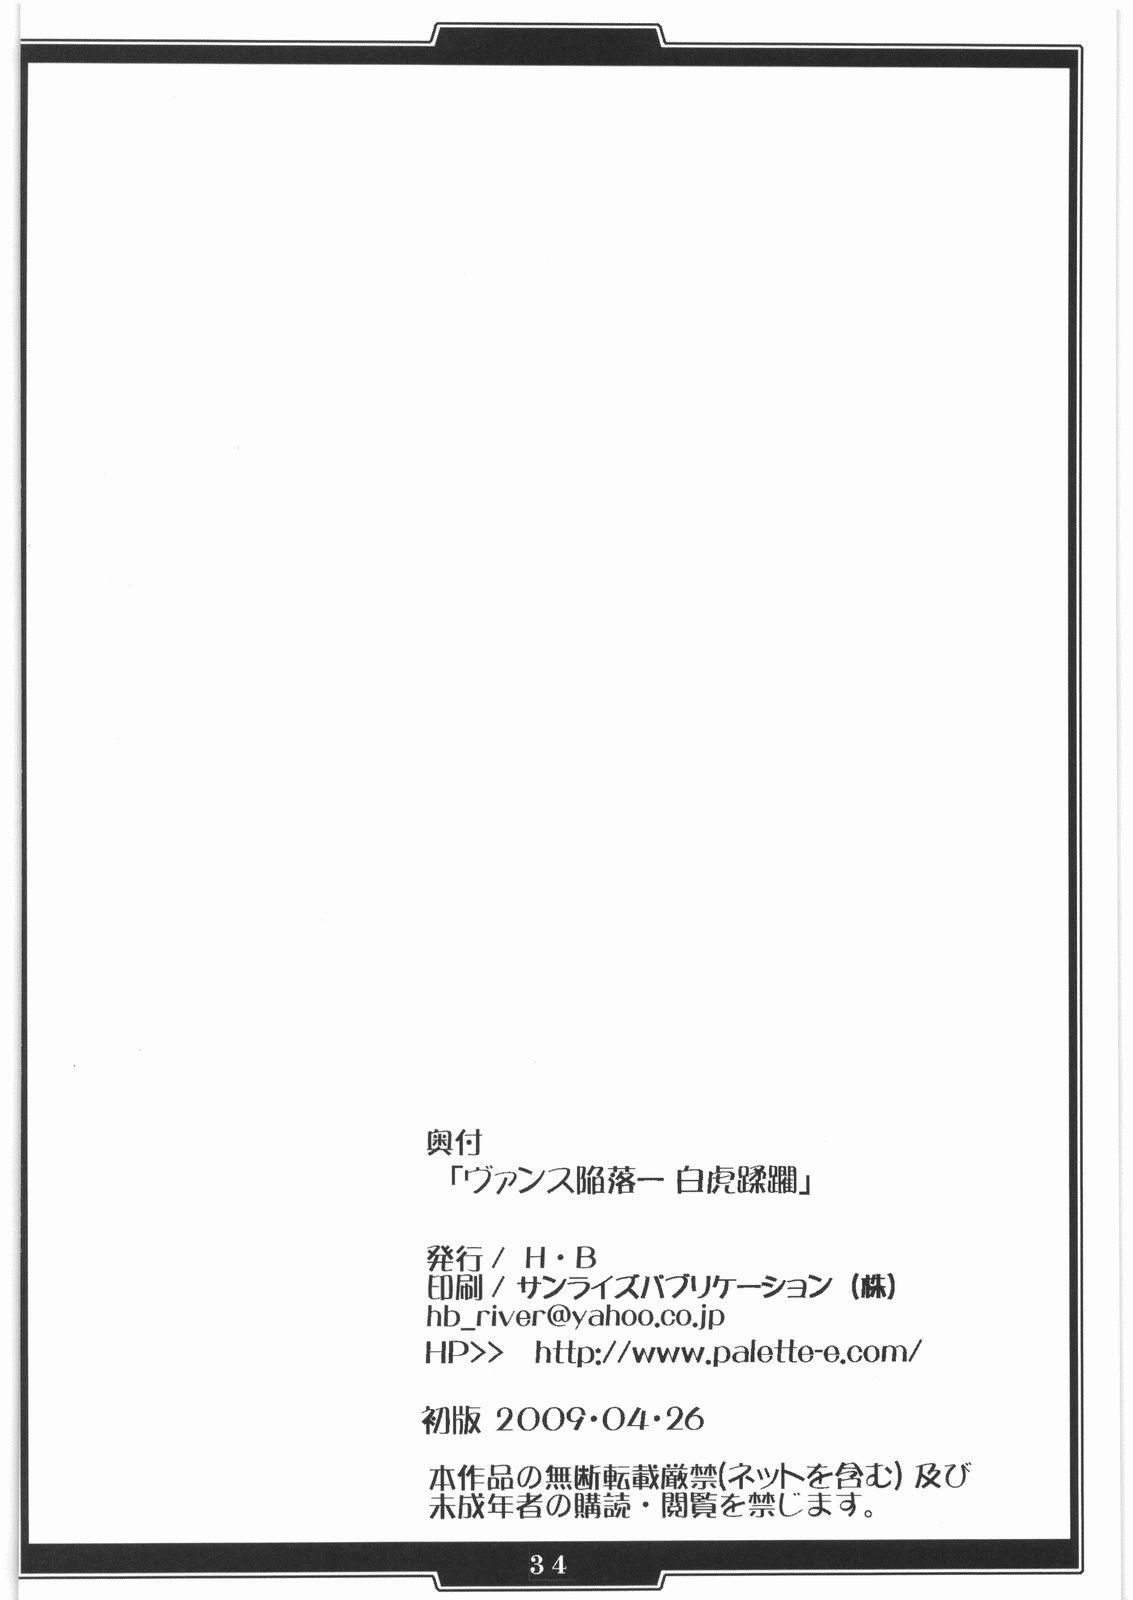 Sloppy Blow Job Vansu Kanraku - Byakko Juurin - Queens blade Cuzinho - Page 33